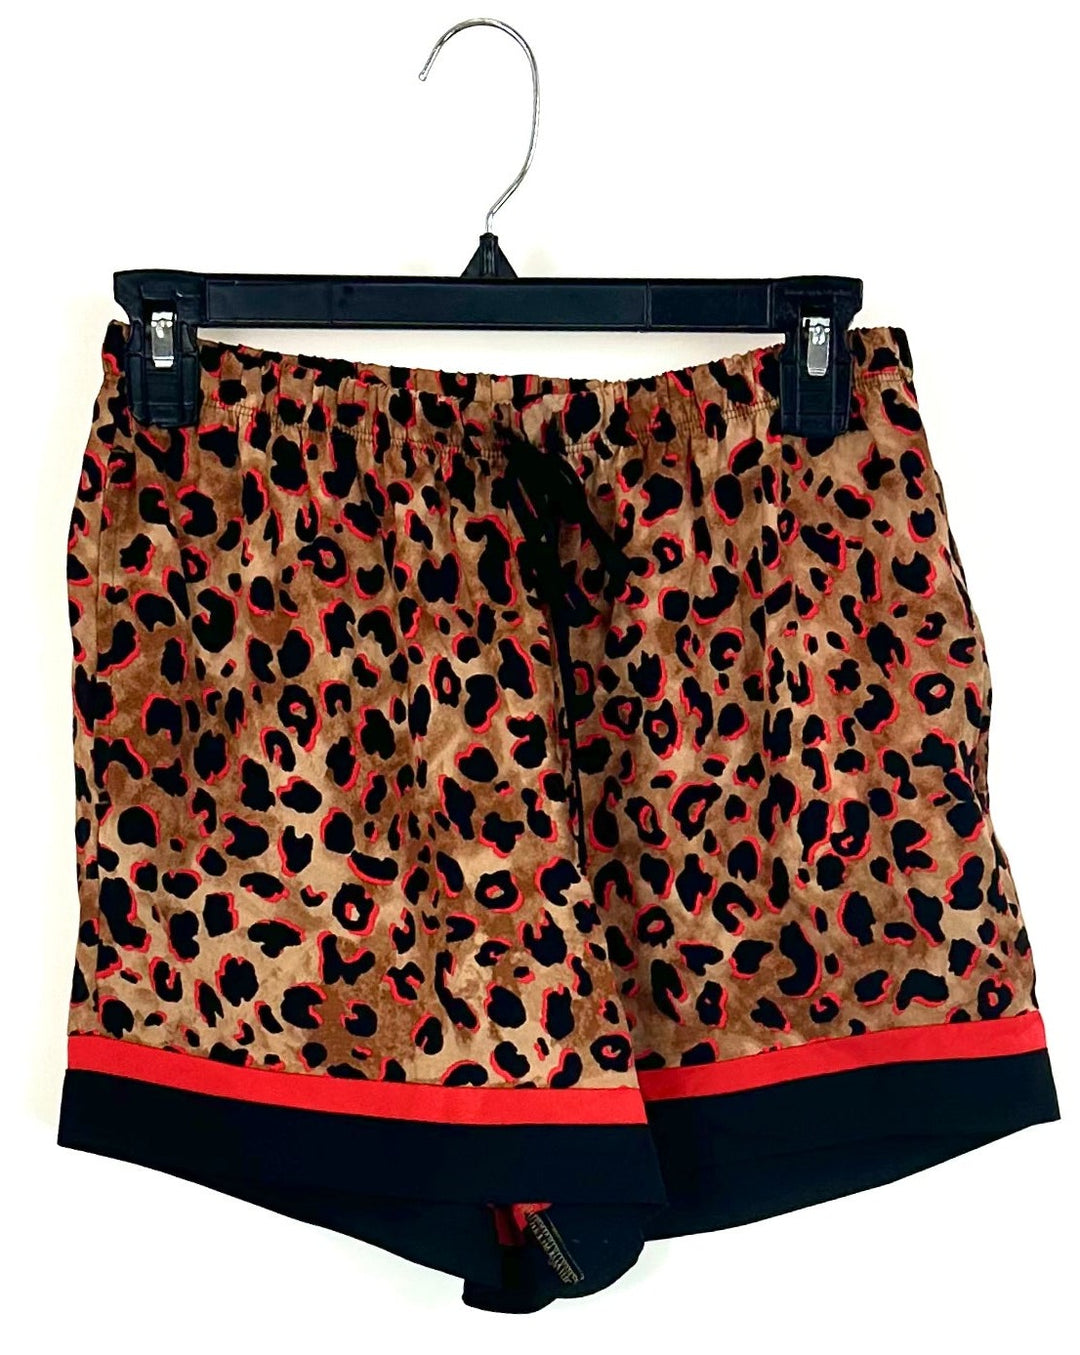 Red Leopard Sleepwear Shorts - Small